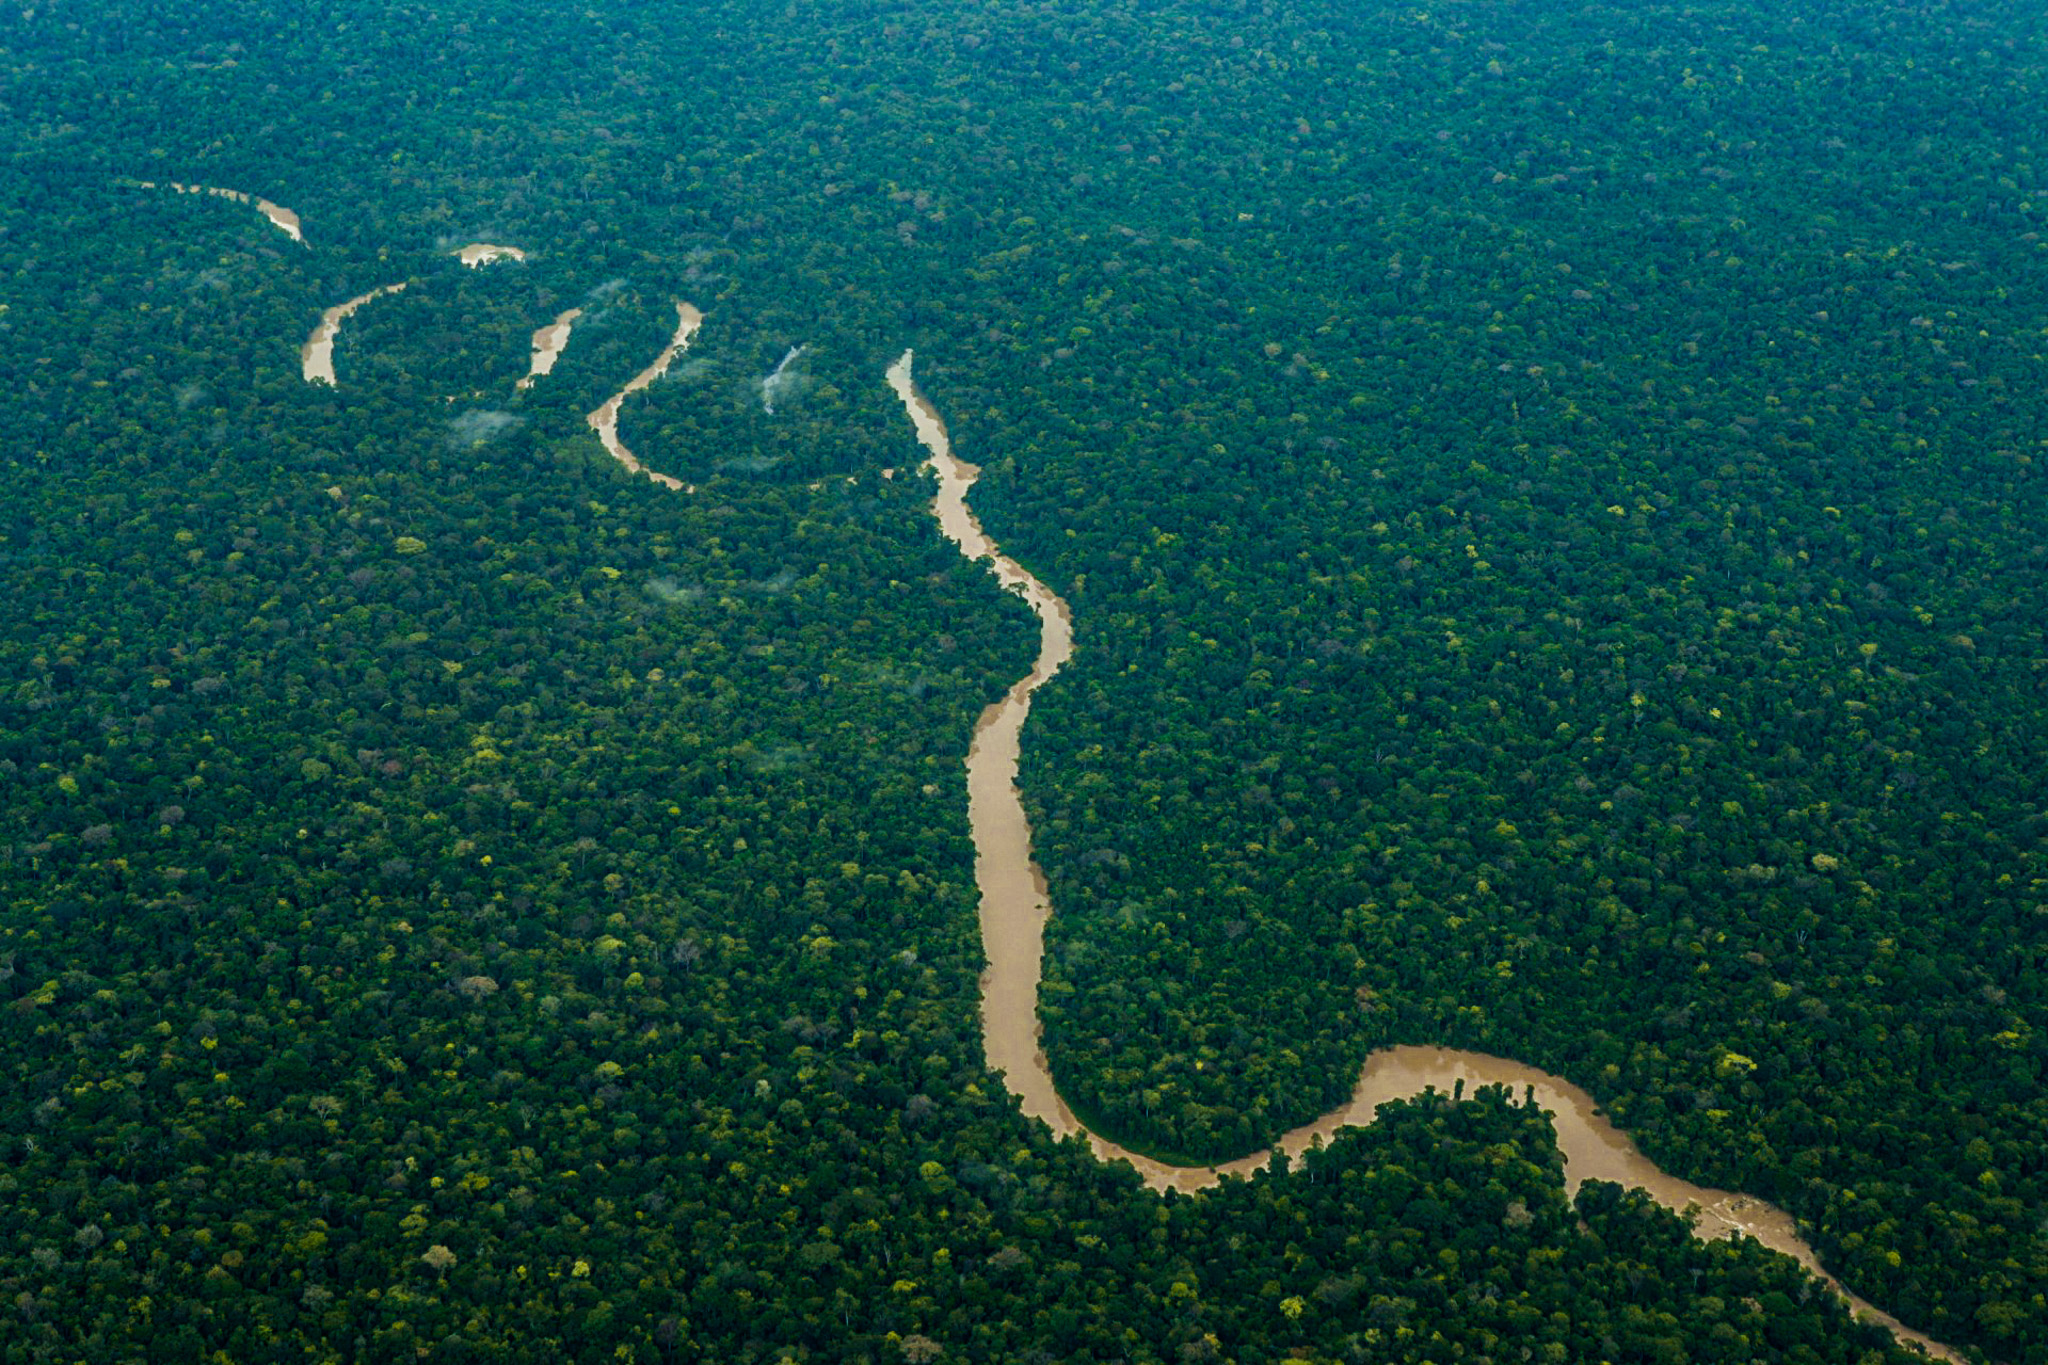 Foto aérea da floresta amazônia corta por um rio sinuoso de águas barrentas.